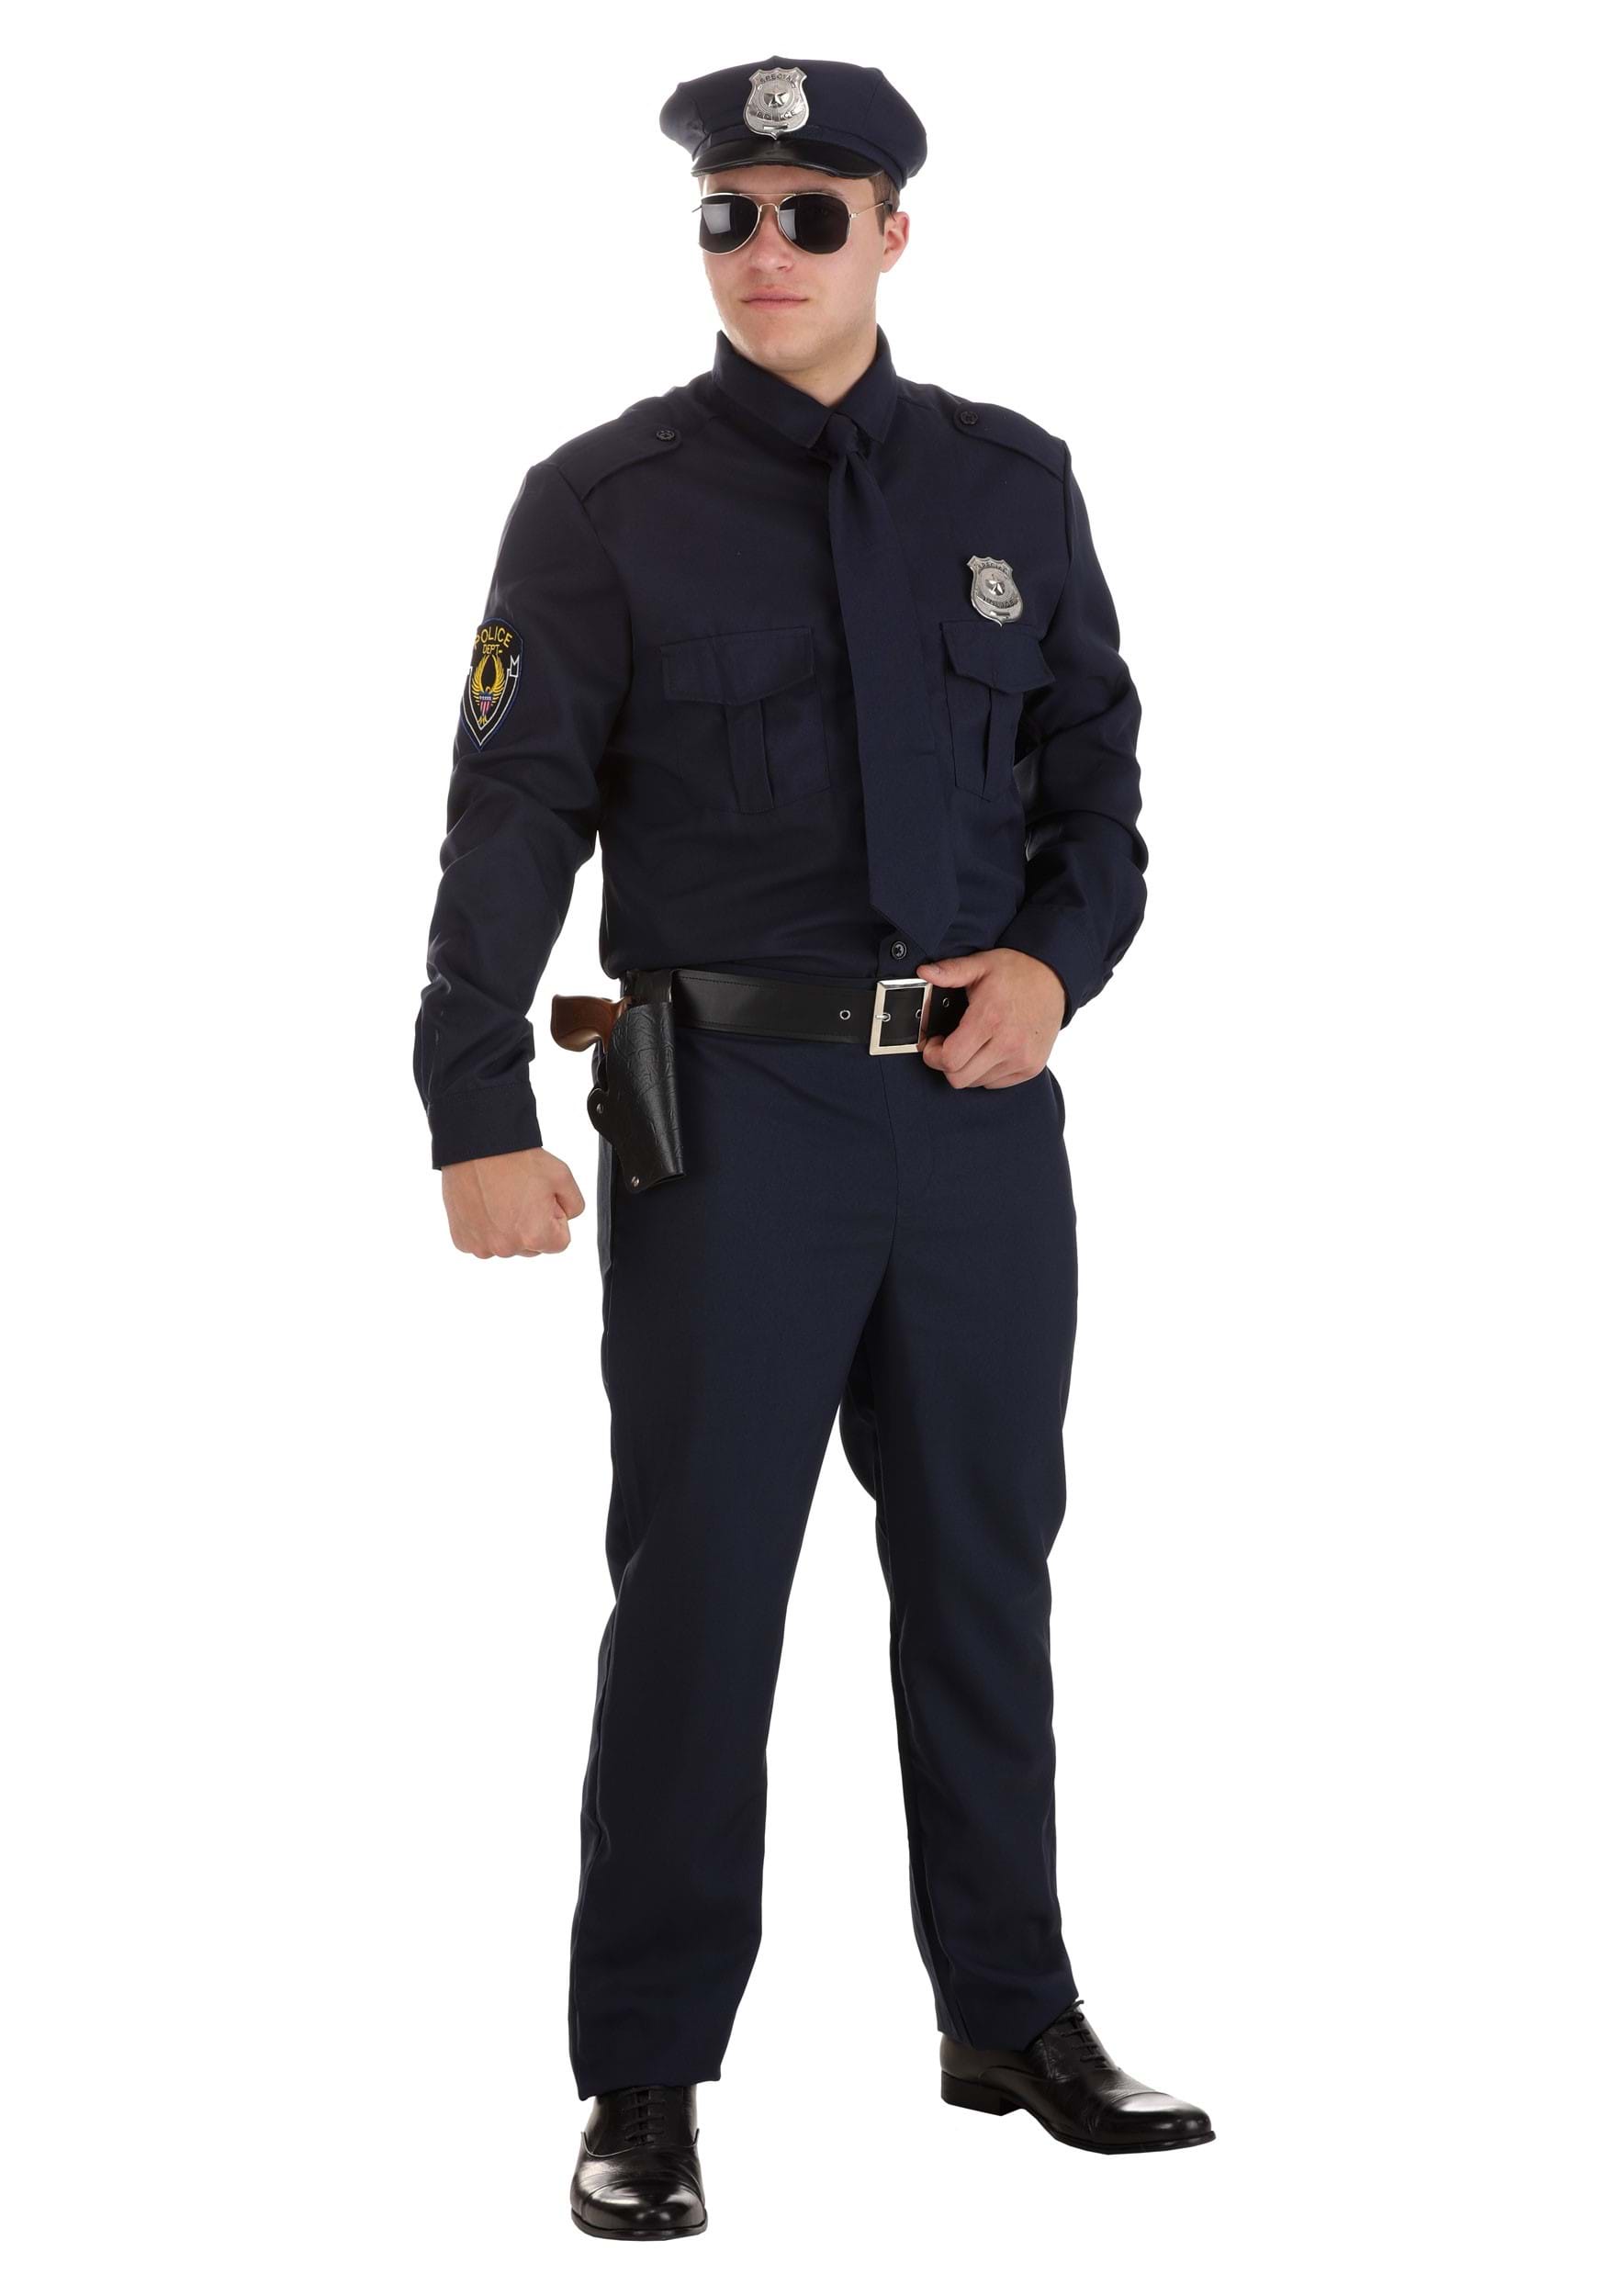 Men's Cop Costume